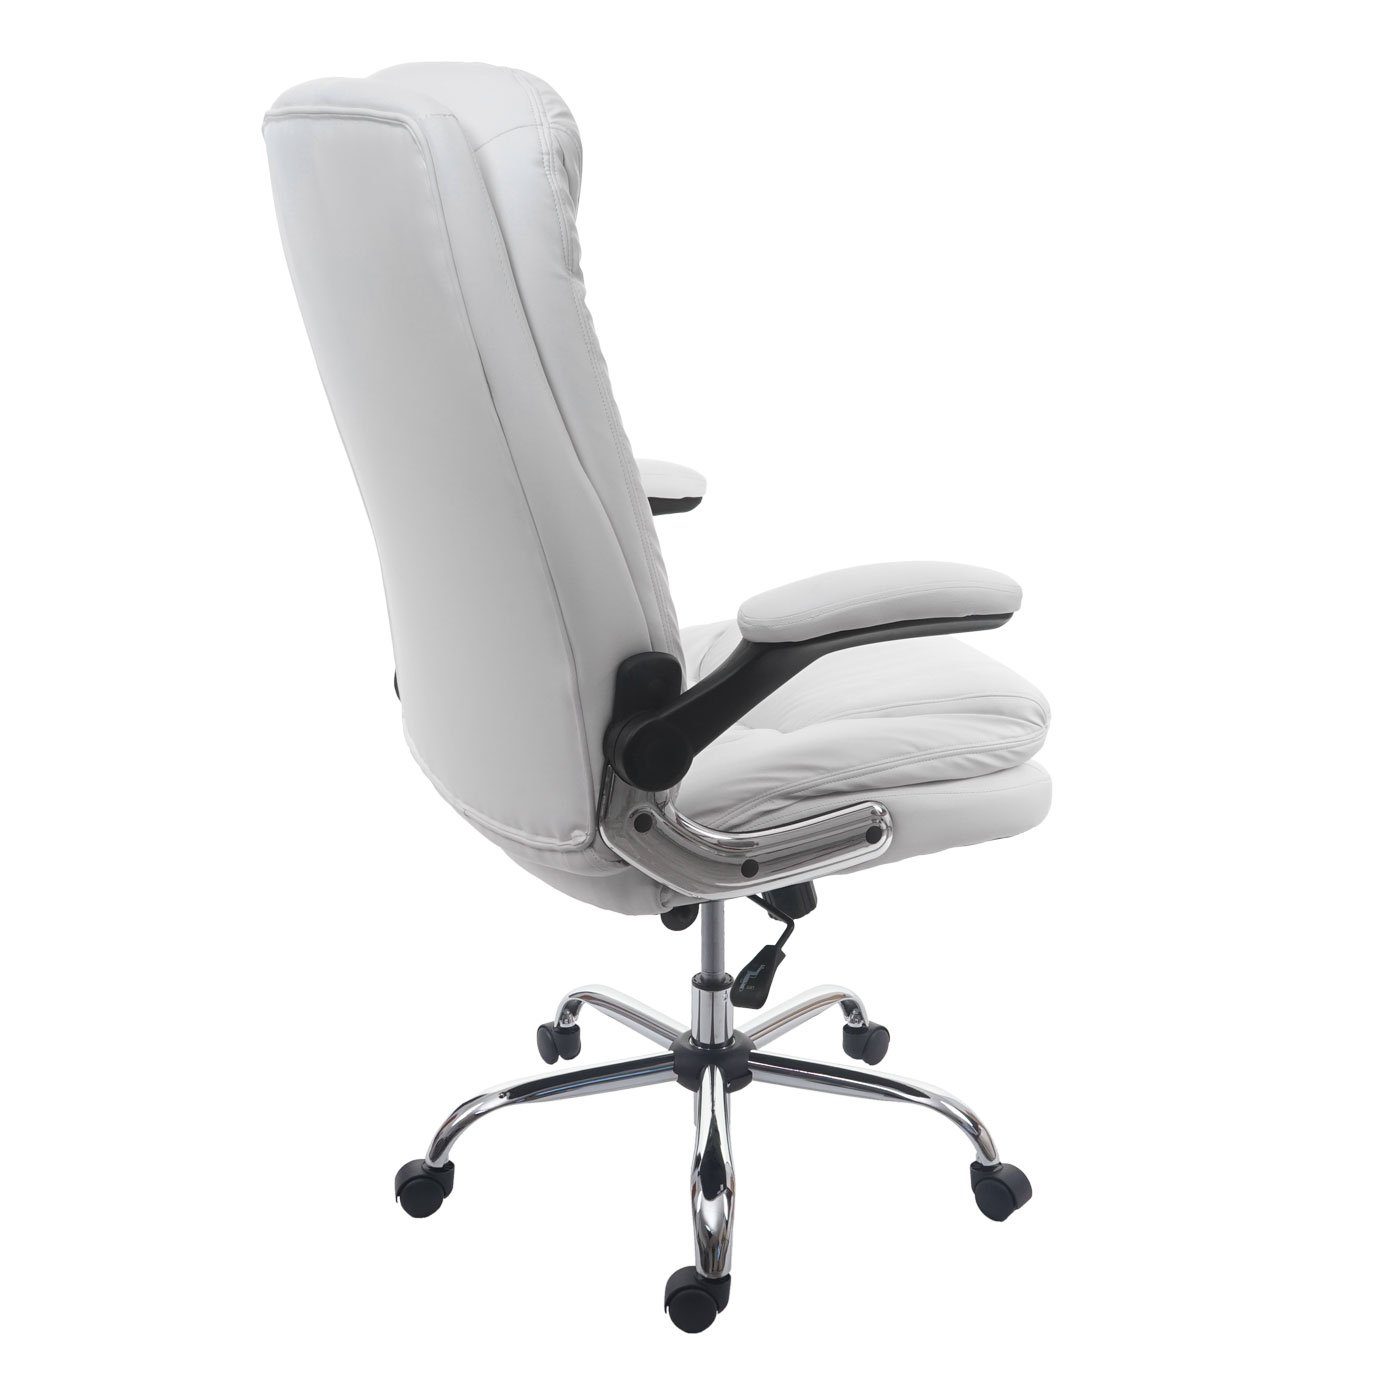 MCW-F81, MCW Armlehnen Schreibtischstuhl Wippmechanik Sitzfläche, Federkern klappbar, einstellbar weiß in